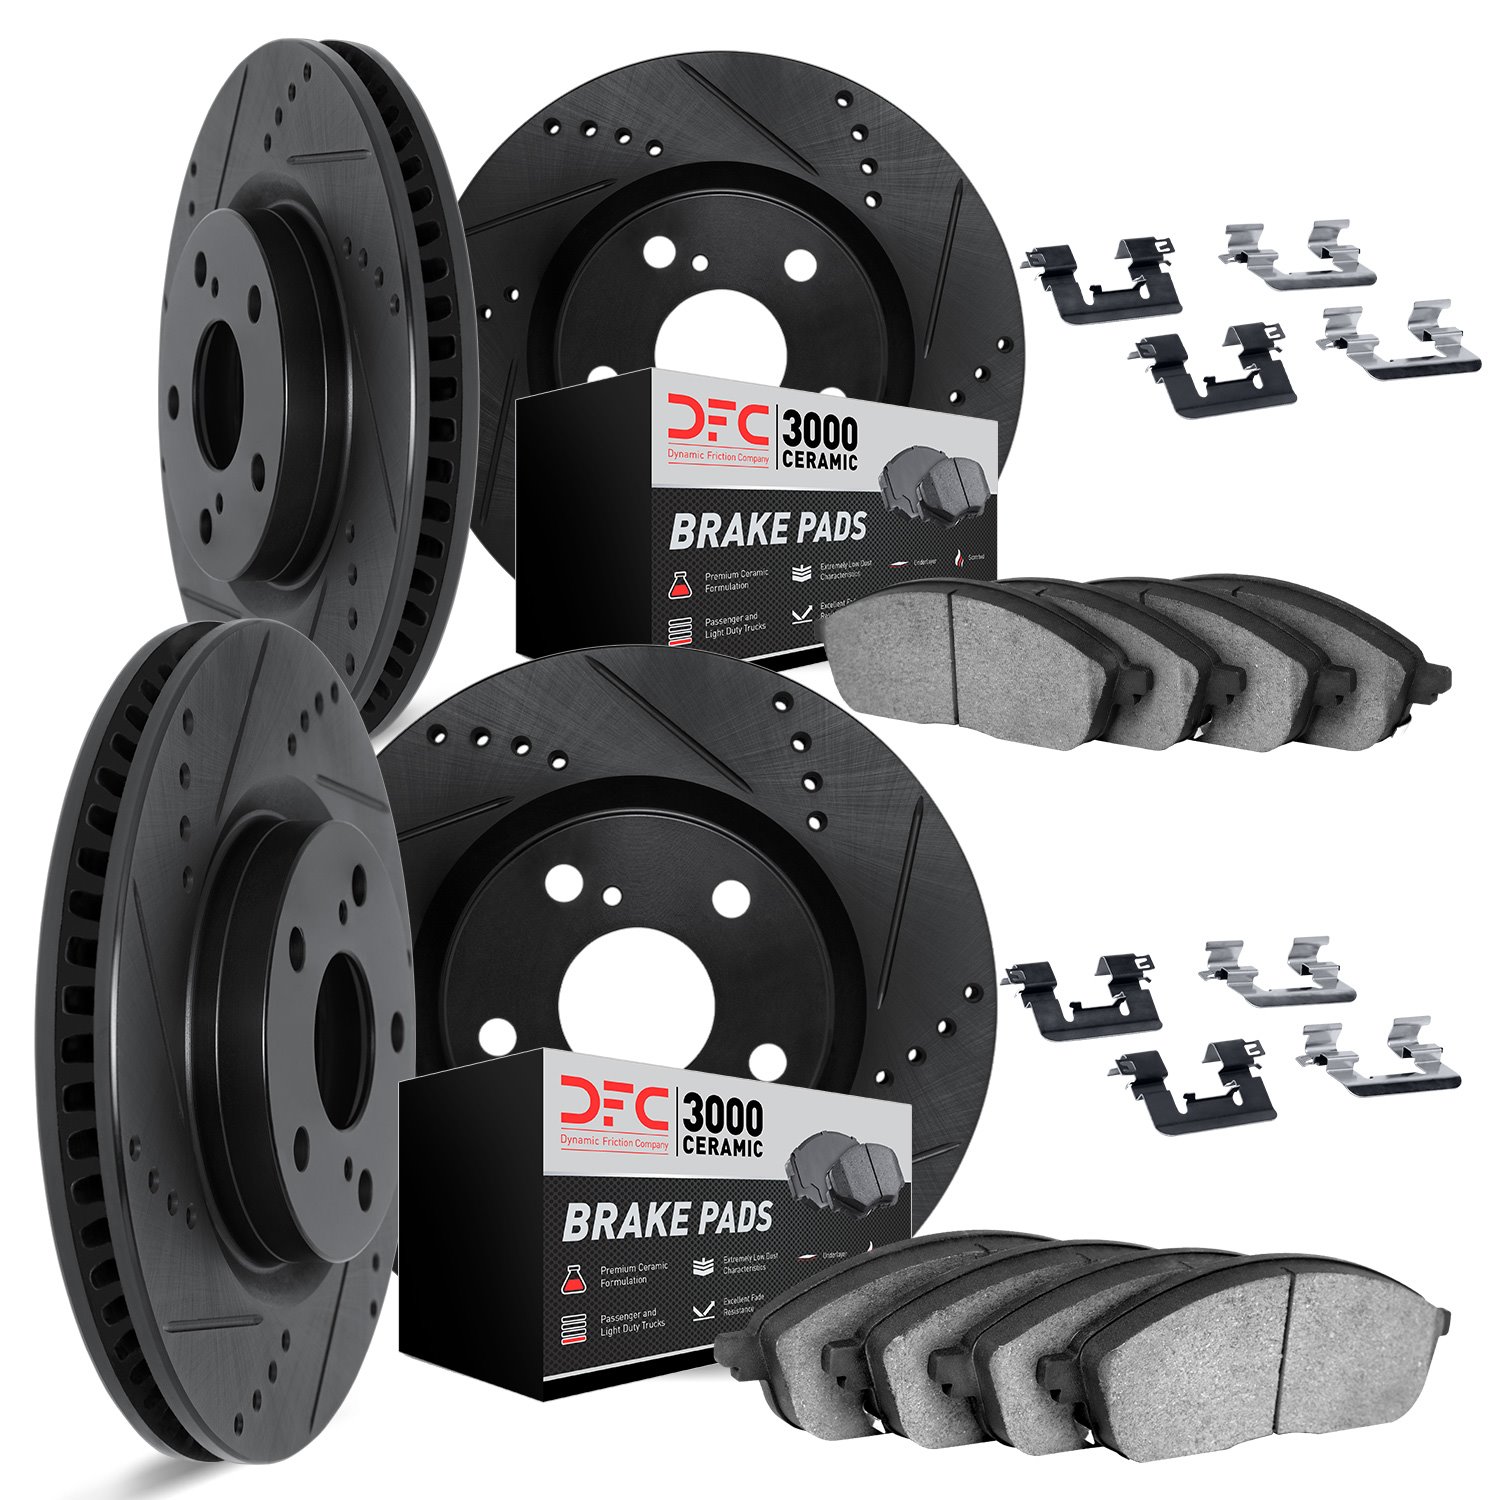 8314-75014 Drilled/Slotted Brake Rotors with 3000-Series Ceramic Brake Pads Kit & Hardware [Black], 2014-2015 Lexus/Toyota/Scion